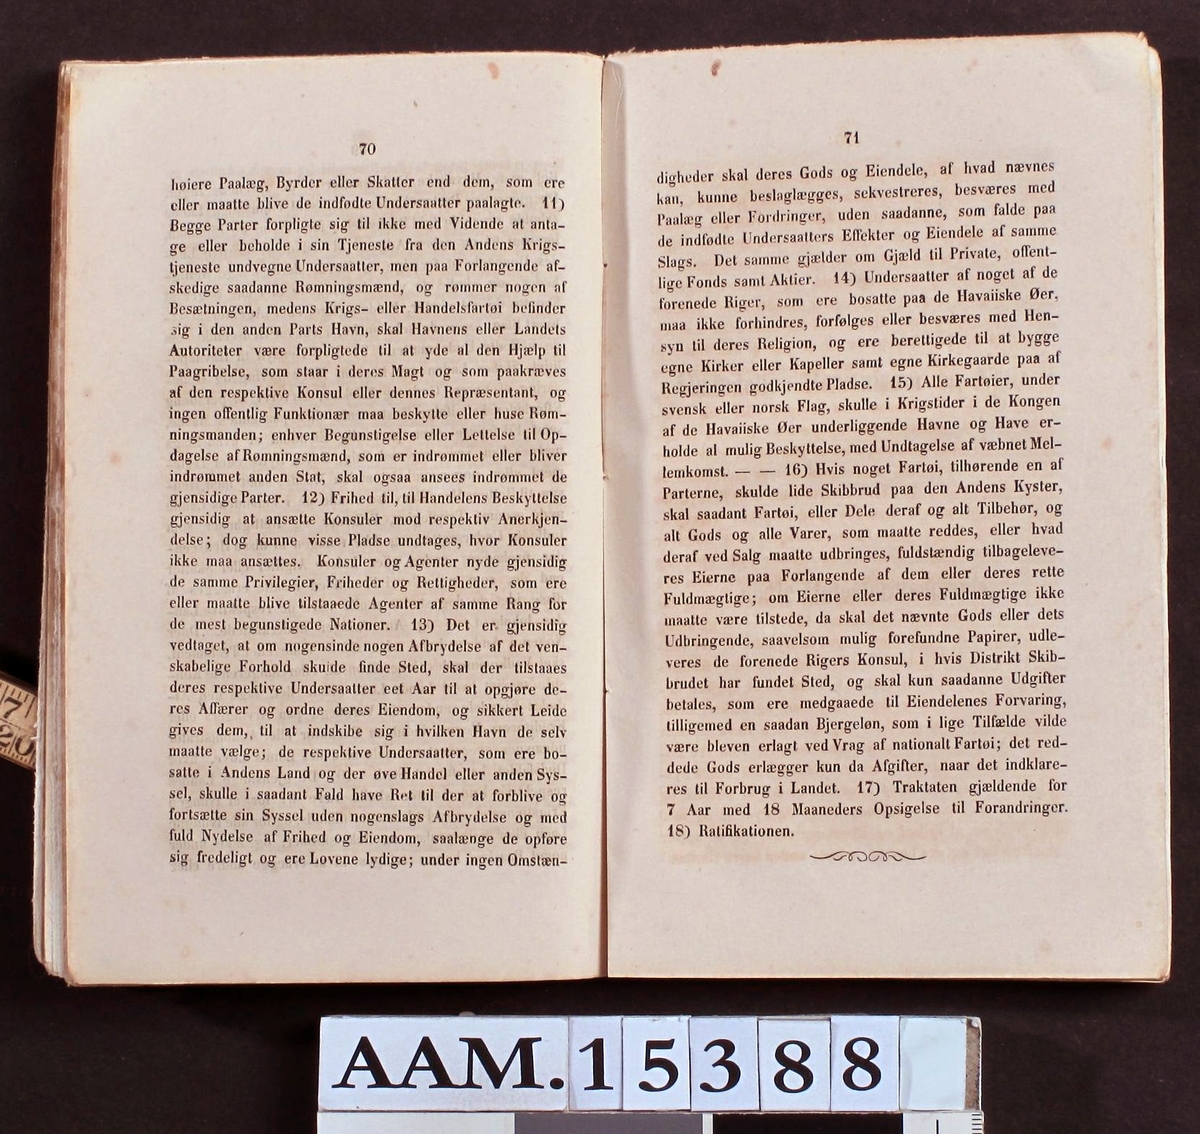 Sømands Aarbog for 1856 af J. C. Knudsen,   Øvertoldbetjent og Dispacheur.arendal 1857.   I Komission hos Eilert Omholt.   T. D. Hjorthøys Bogtrykkeri.  Gult (skittent) papiromslag, 116s.  